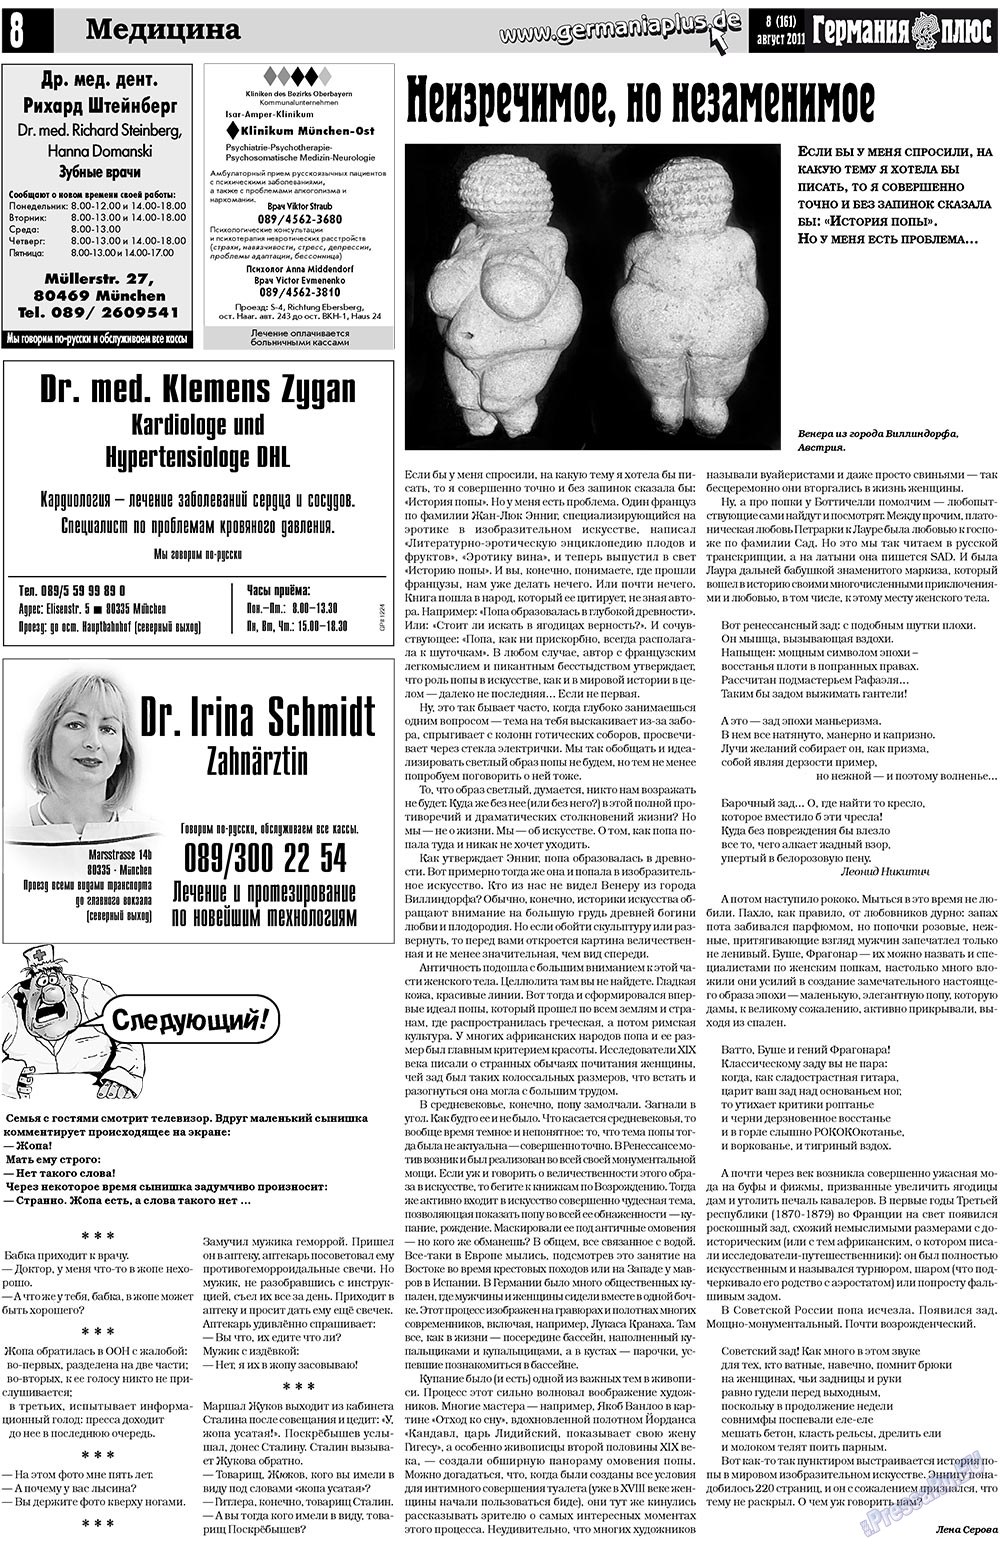 Германия плюс (газета). 2011 год, номер 8, стр. 8